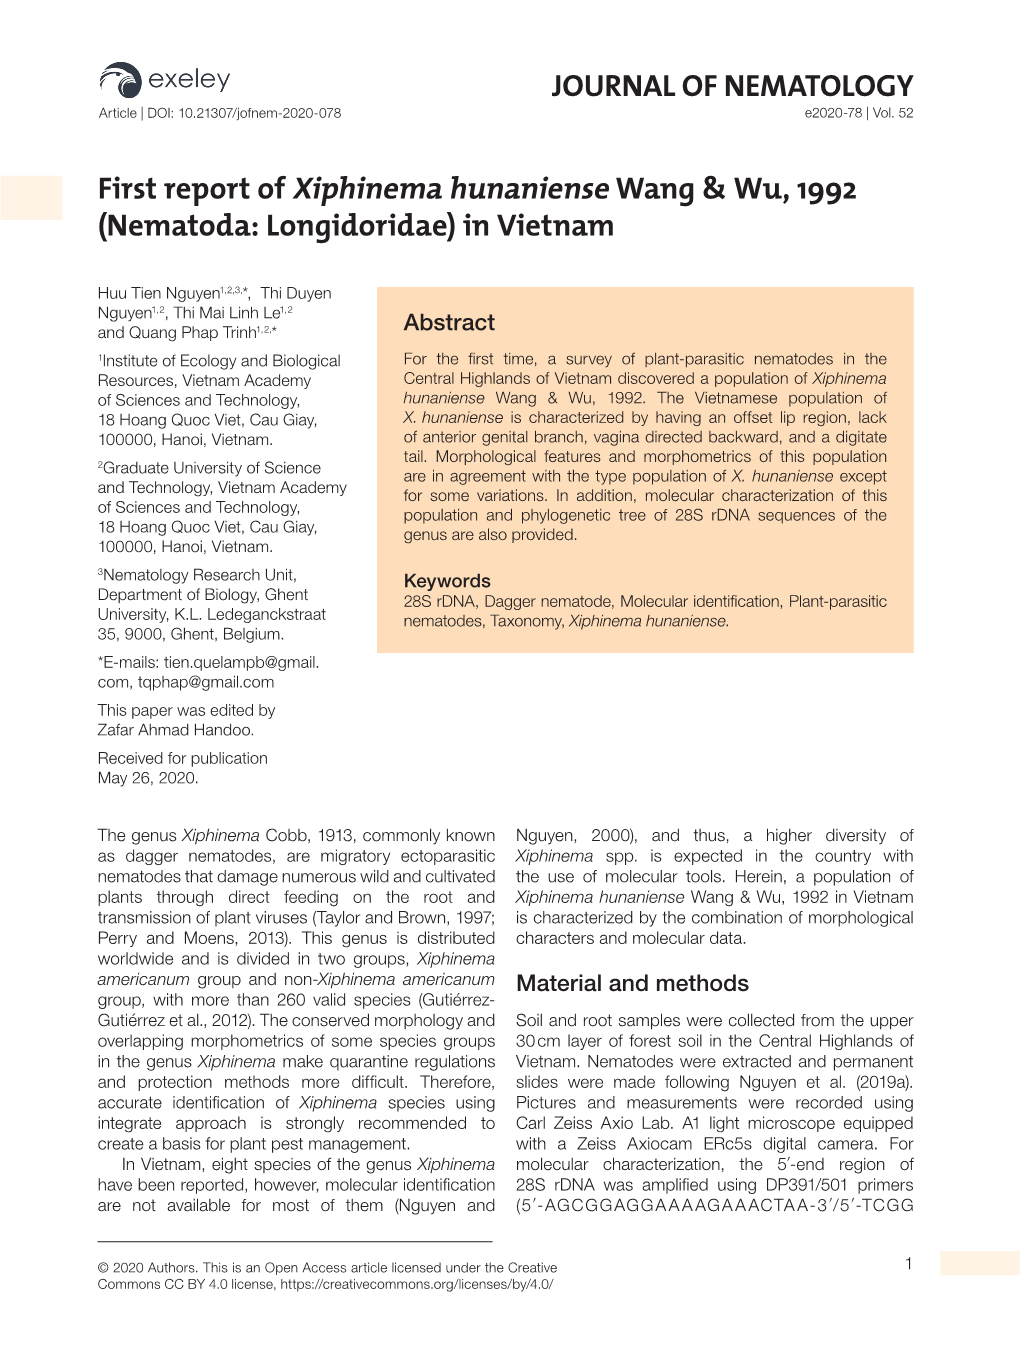 JOURNAL of NEMATOLOGY First Report of Xiphinema Hunaniense Wang & Wu, 1992 (Nematoda: Longidoridae) in Vietnam